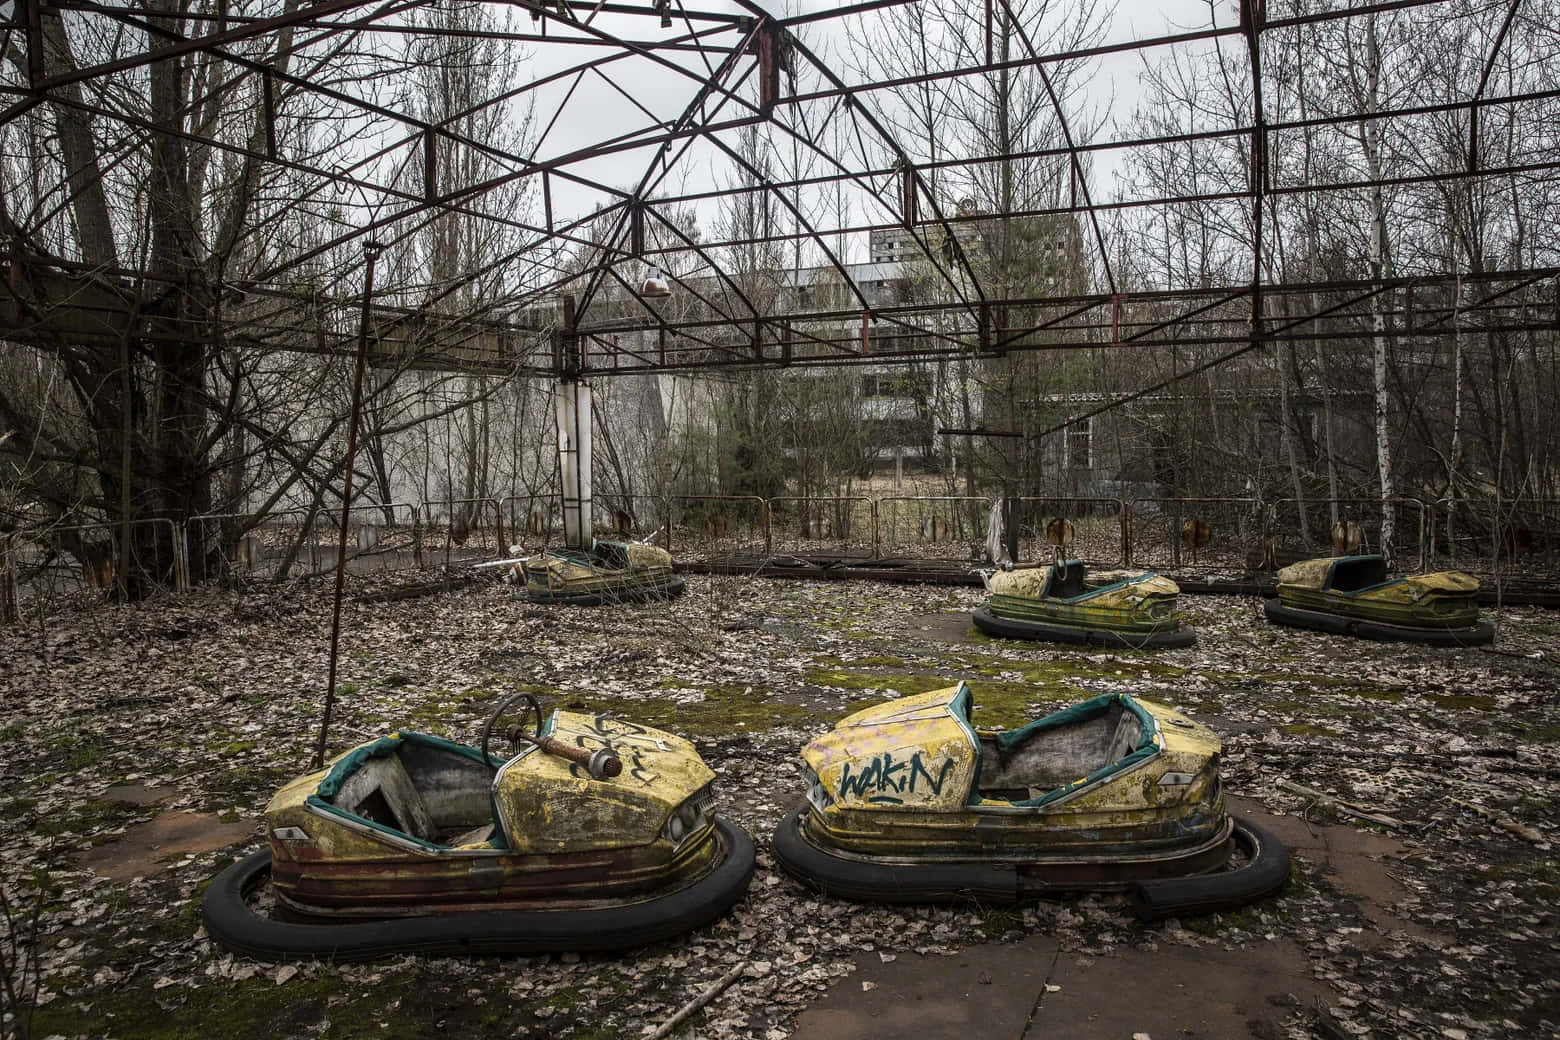 Chernobylsevakueringszonstur